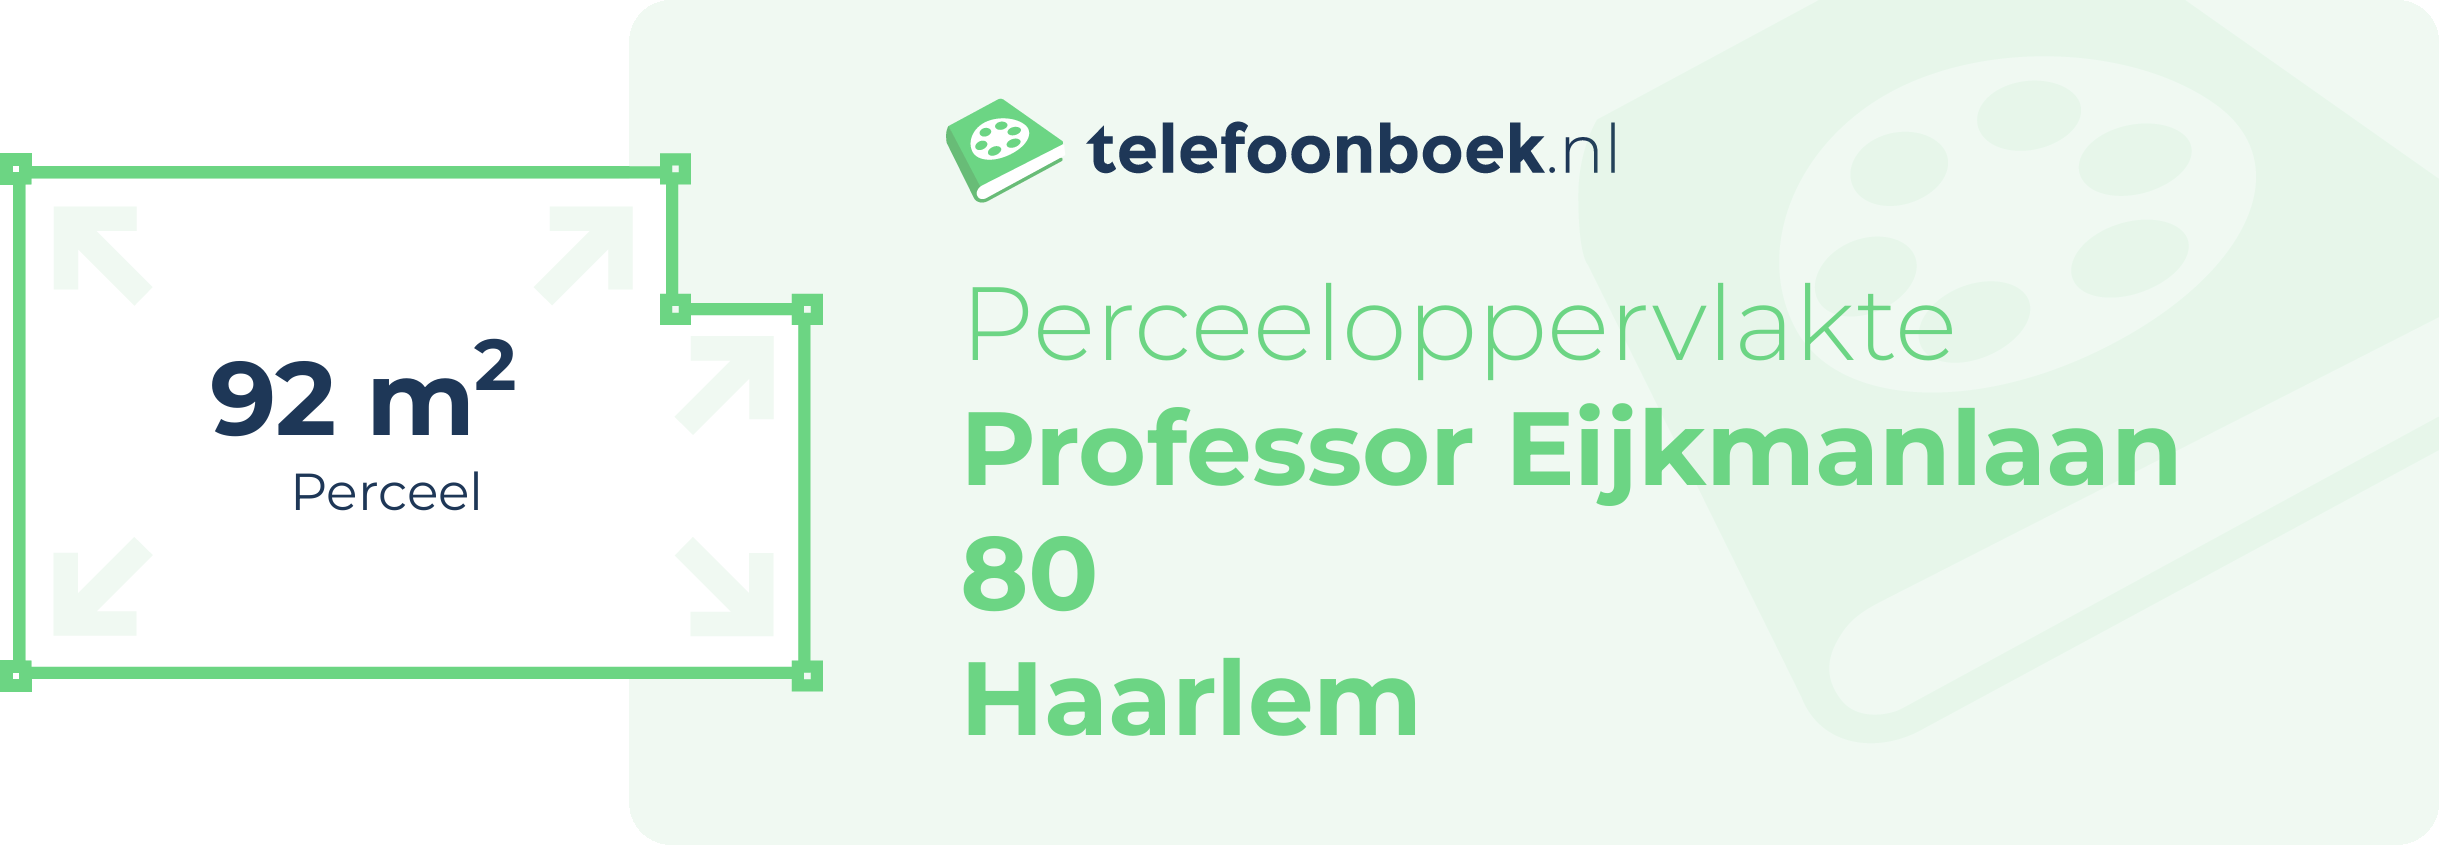 Perceeloppervlakte Professor Eijkmanlaan 80 Haarlem